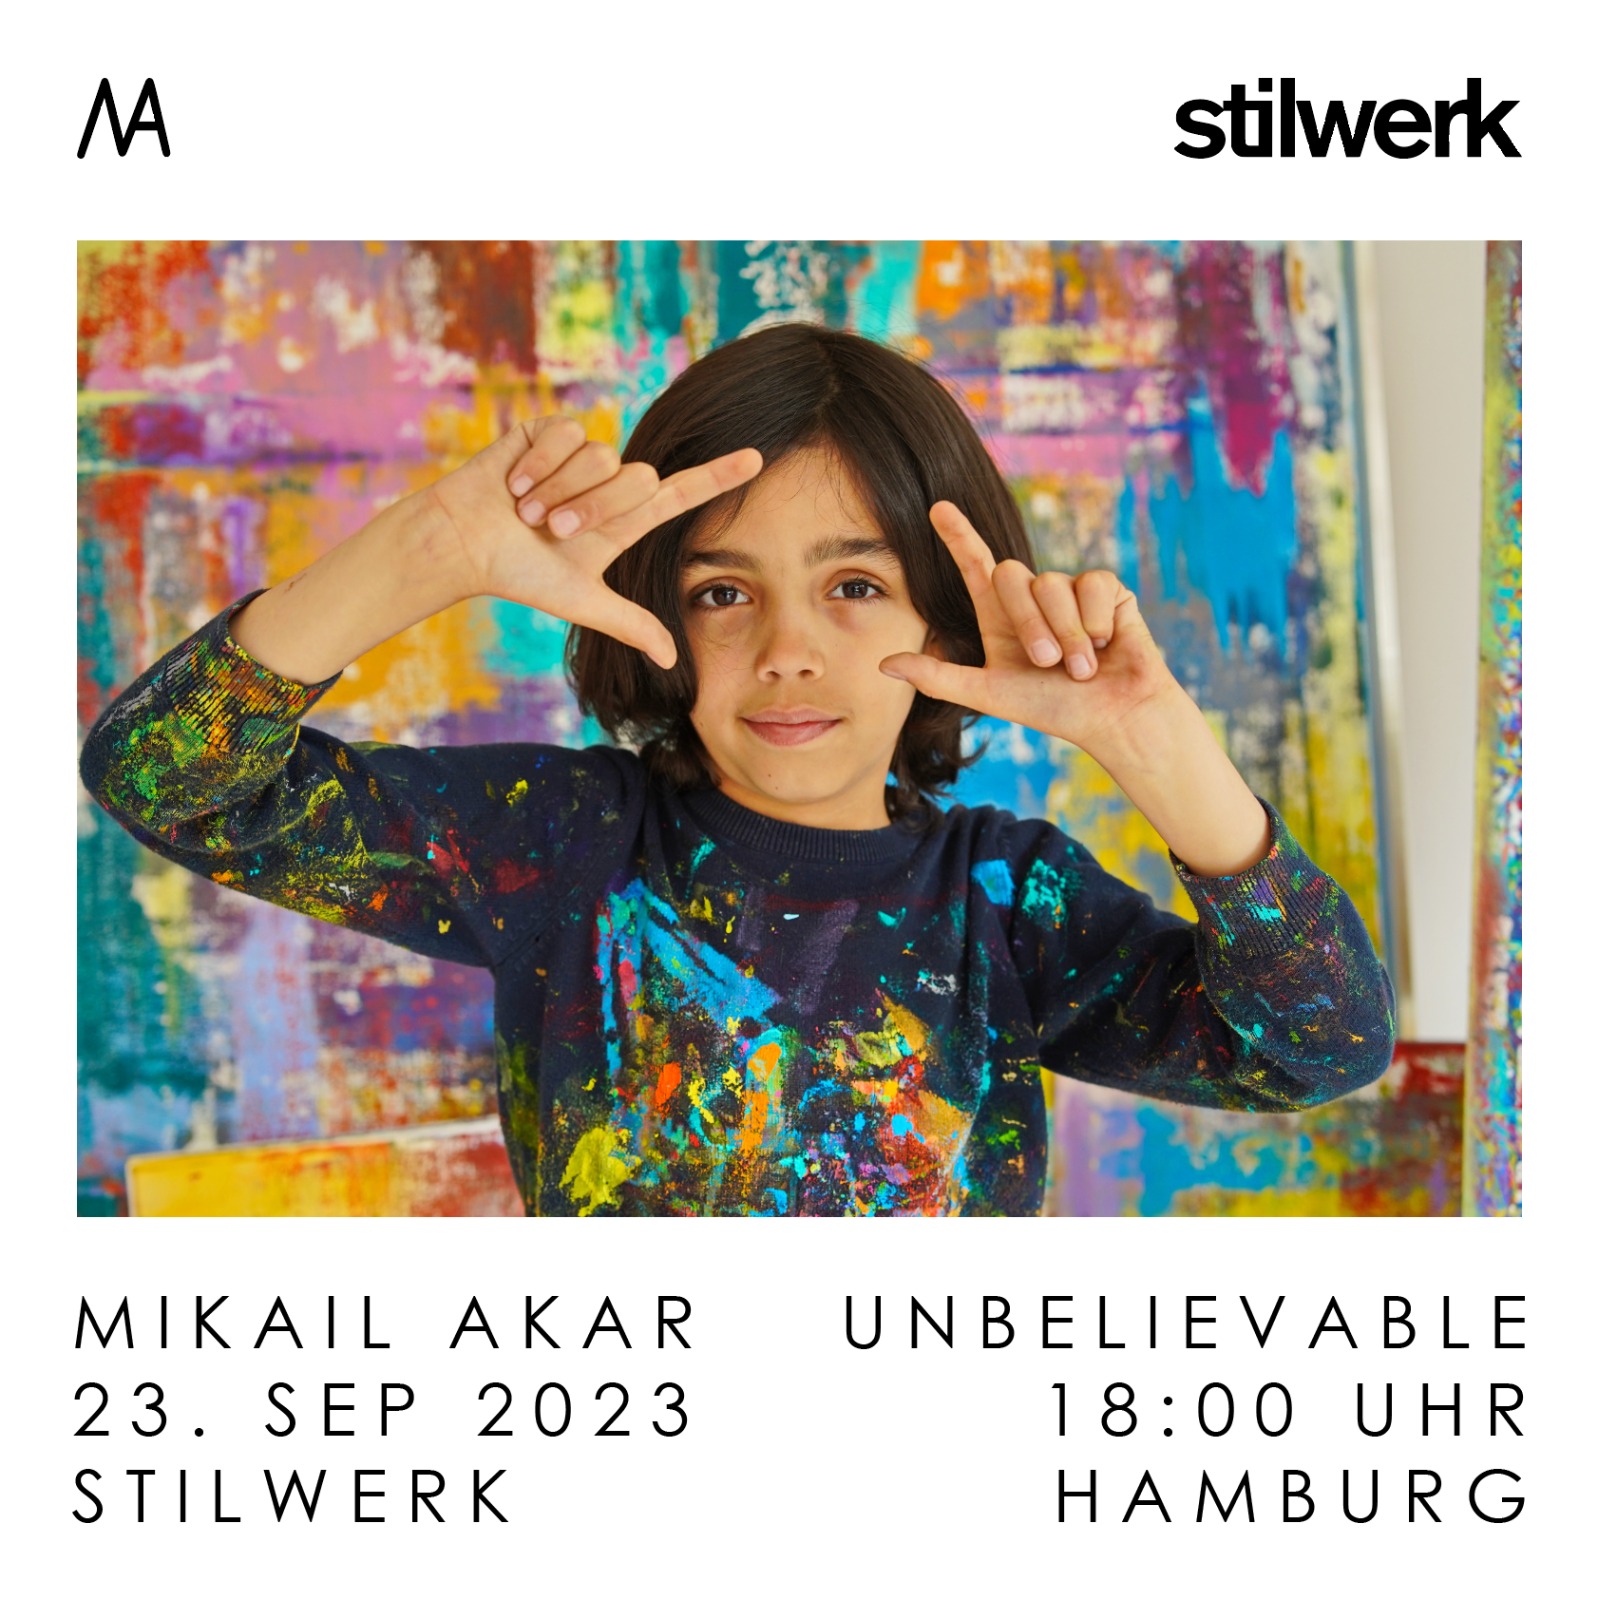 Unbelievable Hamburg Mikail Akar